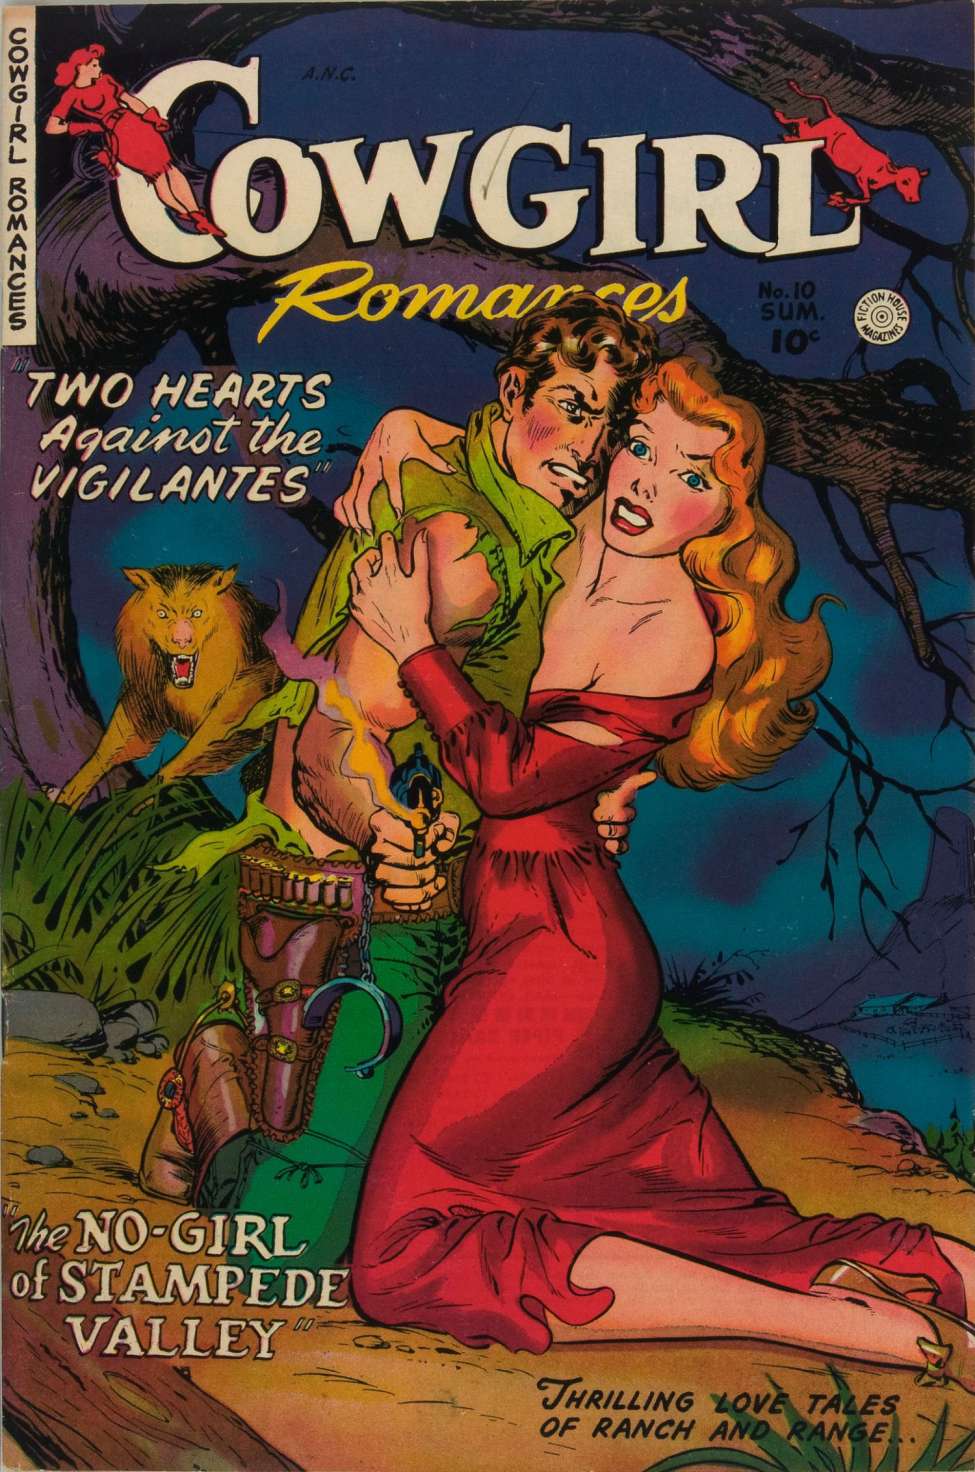 Romances 10. Two Hearts.